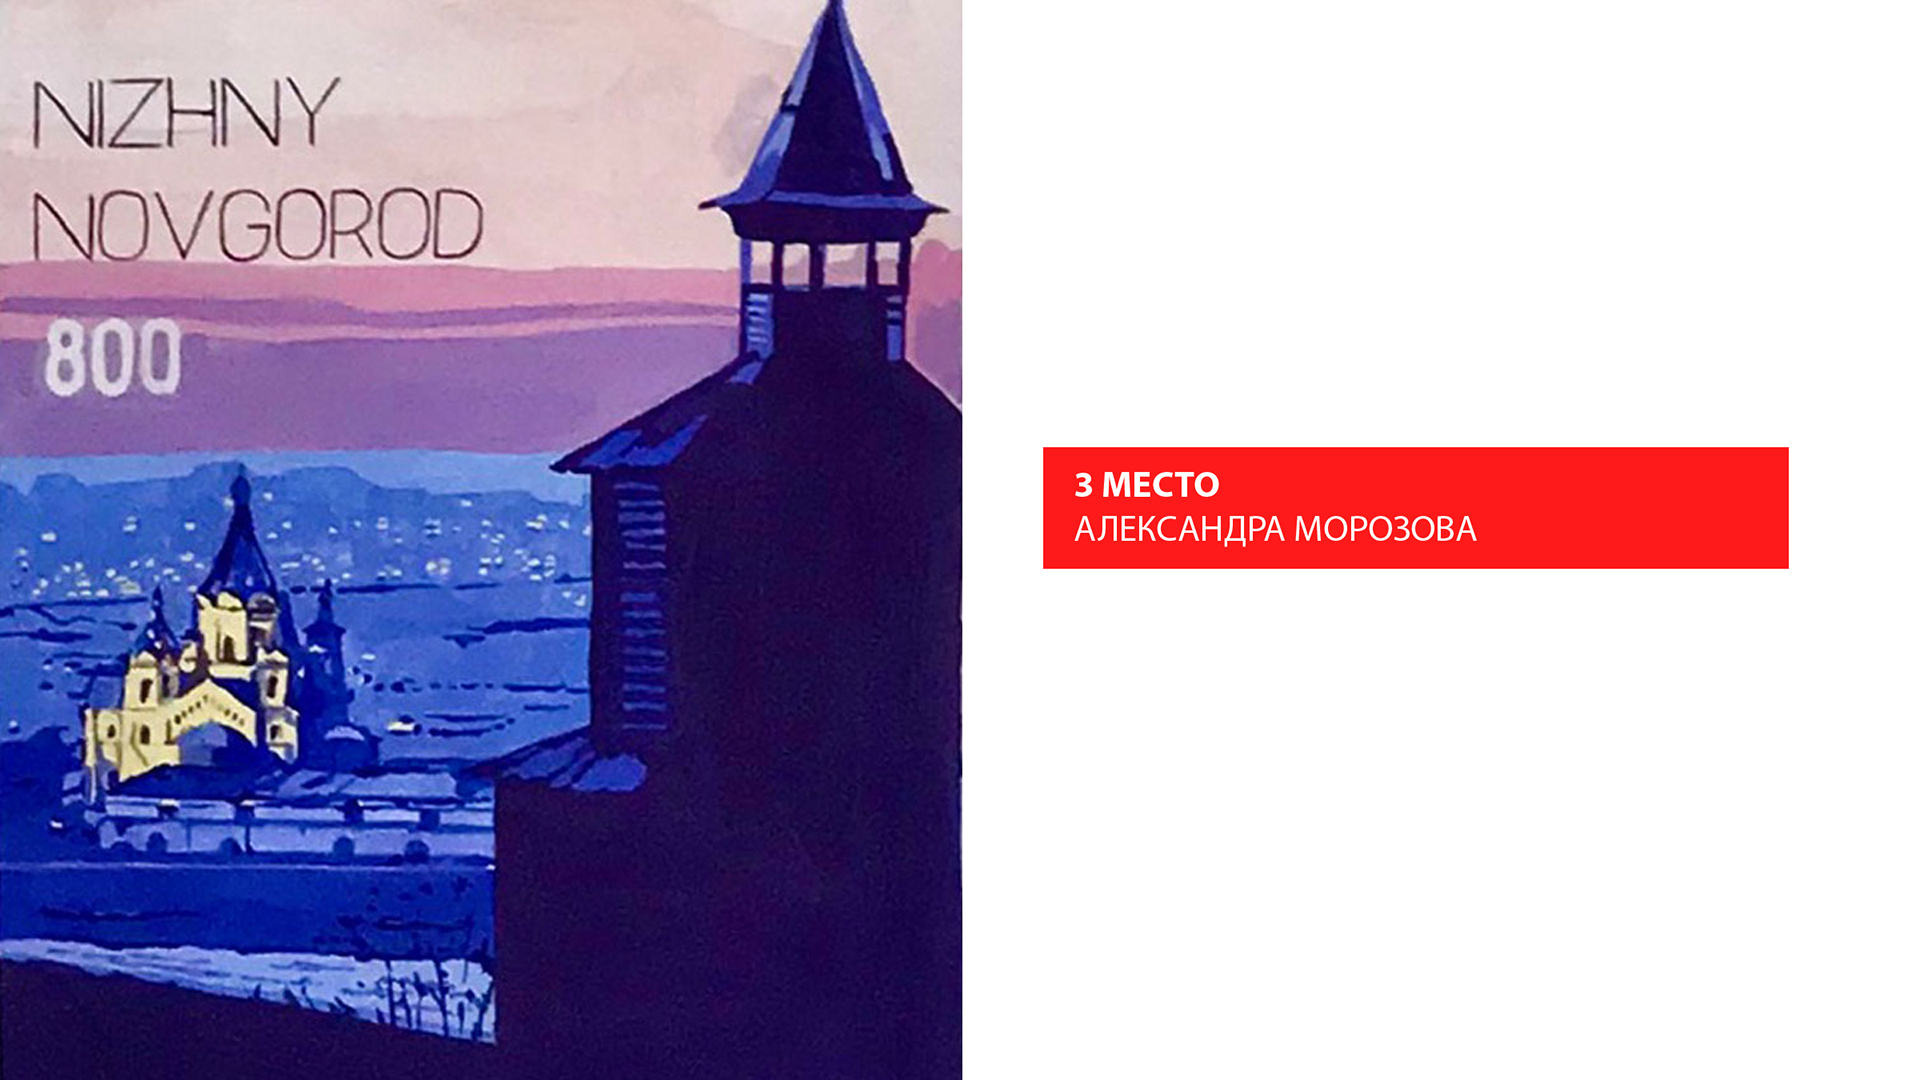 На факультете дизайна, изящных искусств и медиа-технологий состоялся конкурс плакатов, посвящённых 800-летию Нижнего Новгорода